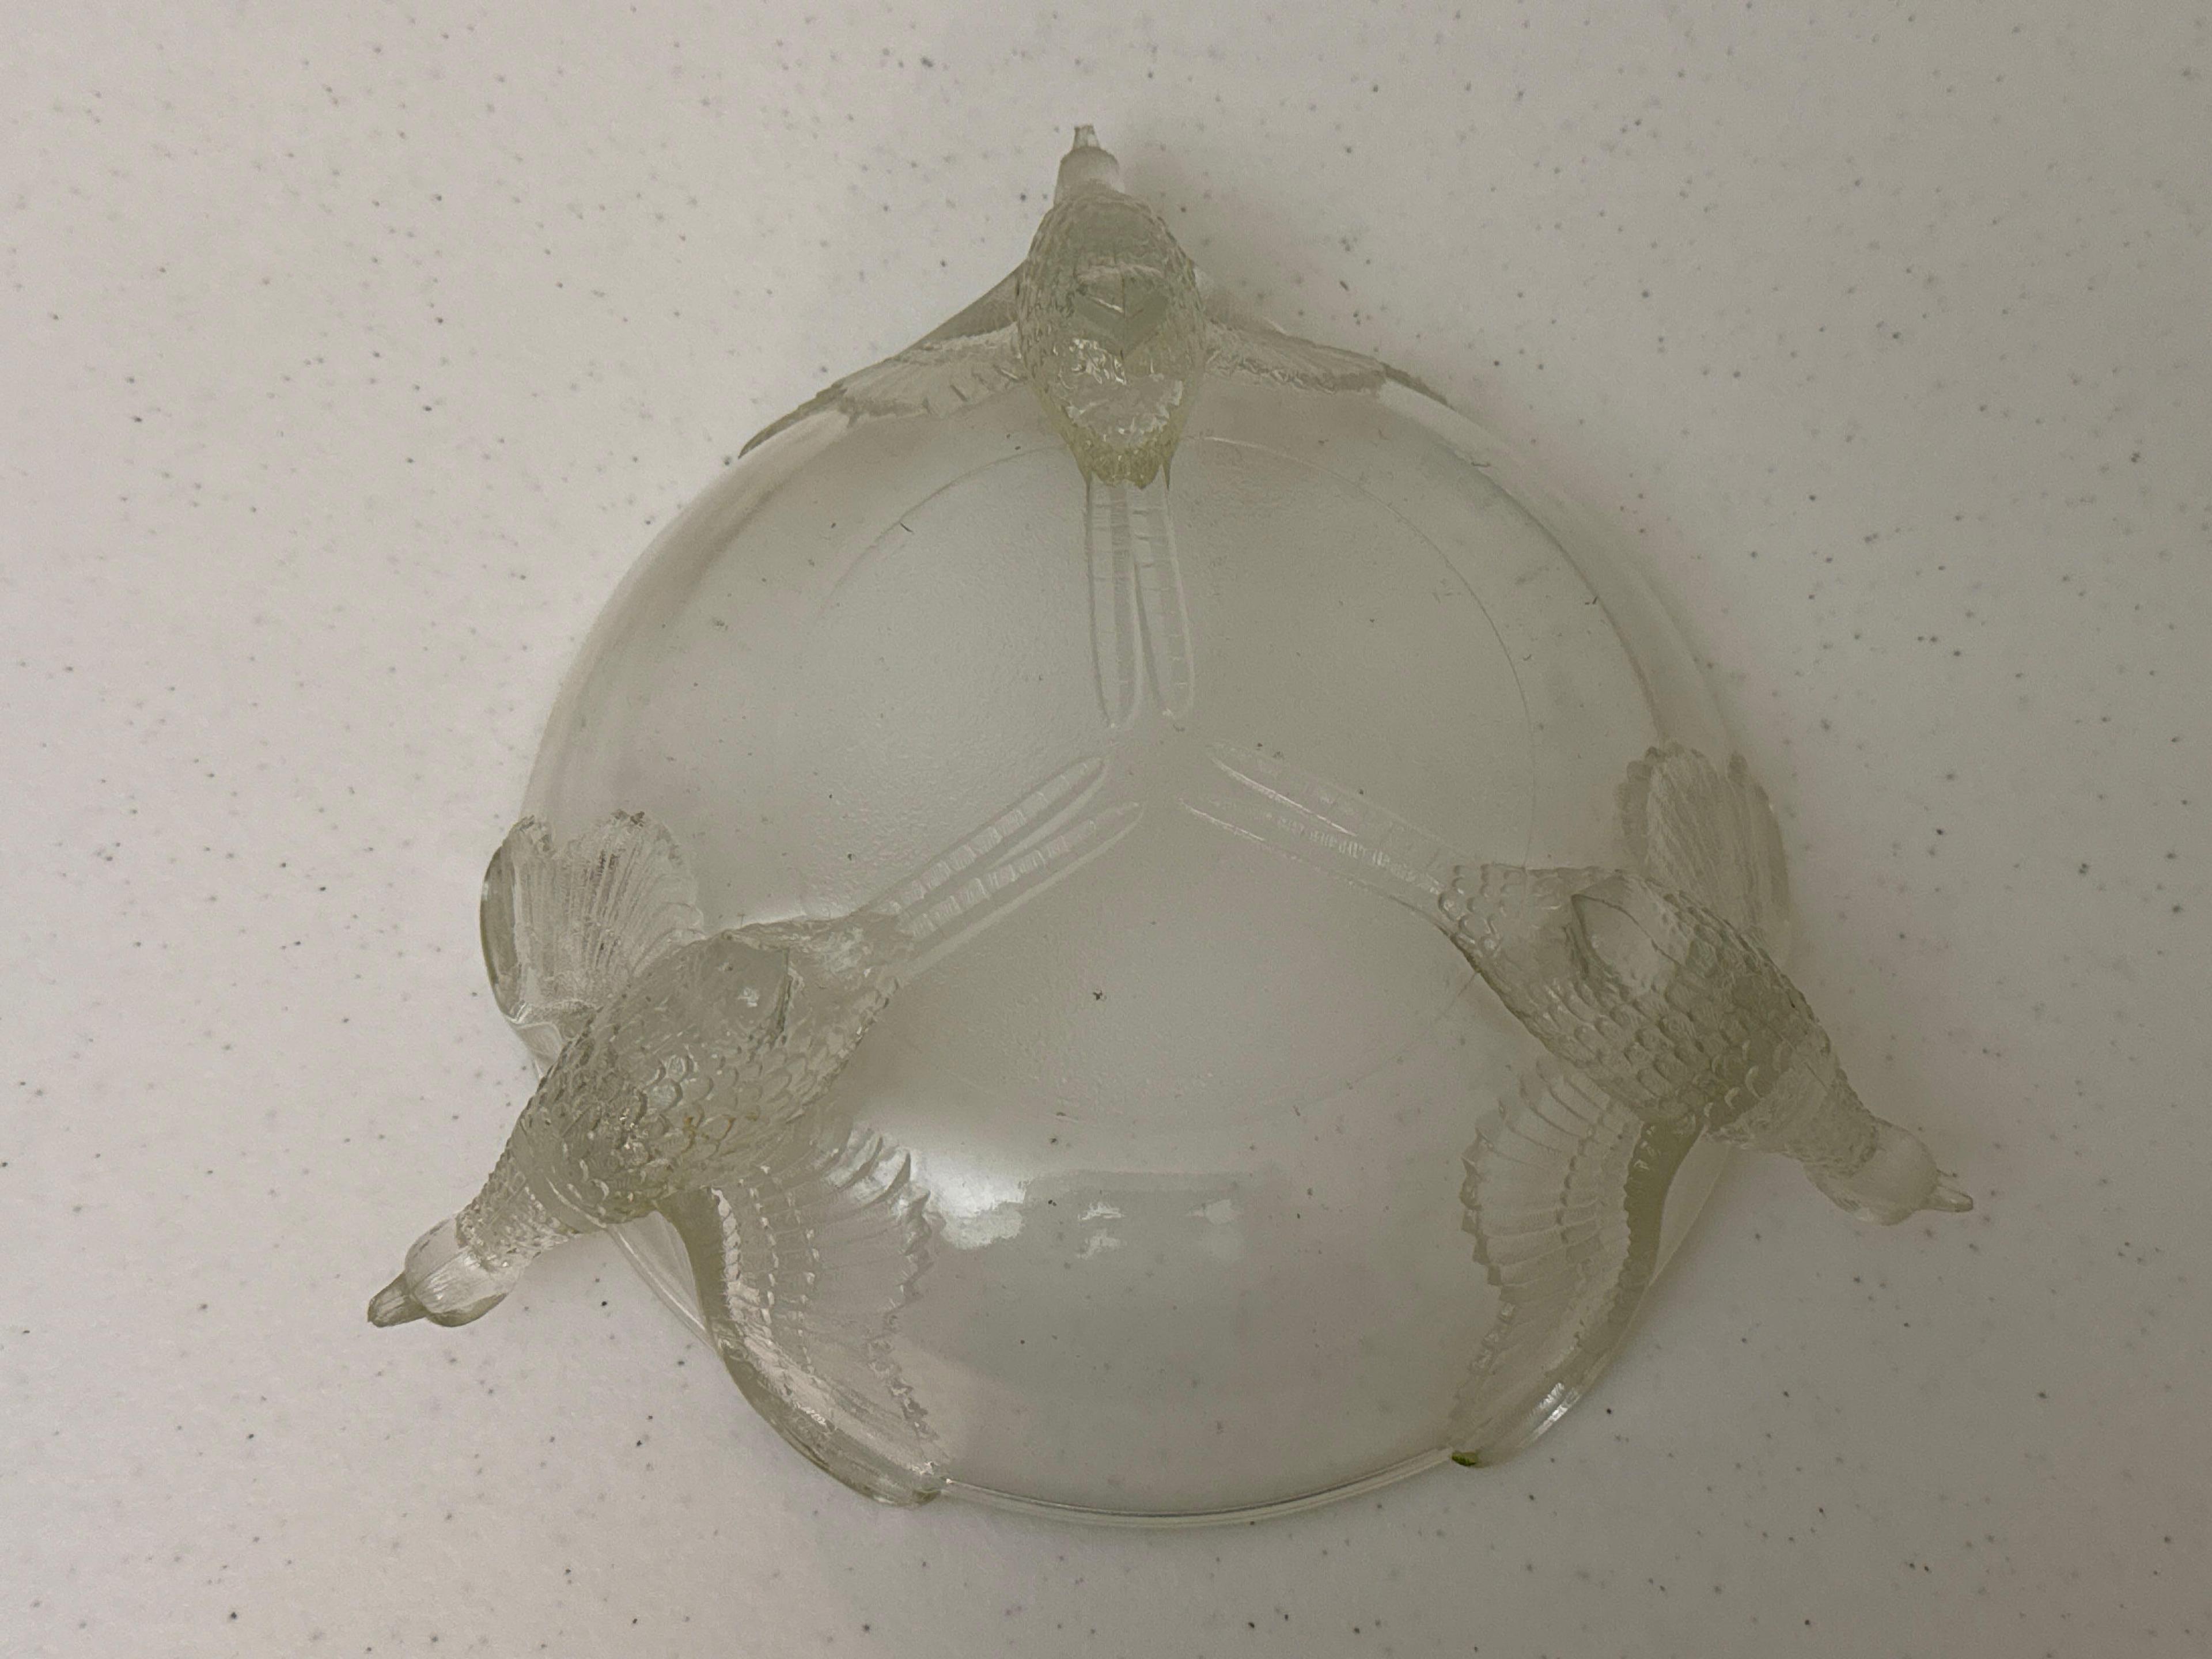 Molded Pheasants Glass Bowl & Cristal d Arques Stemware